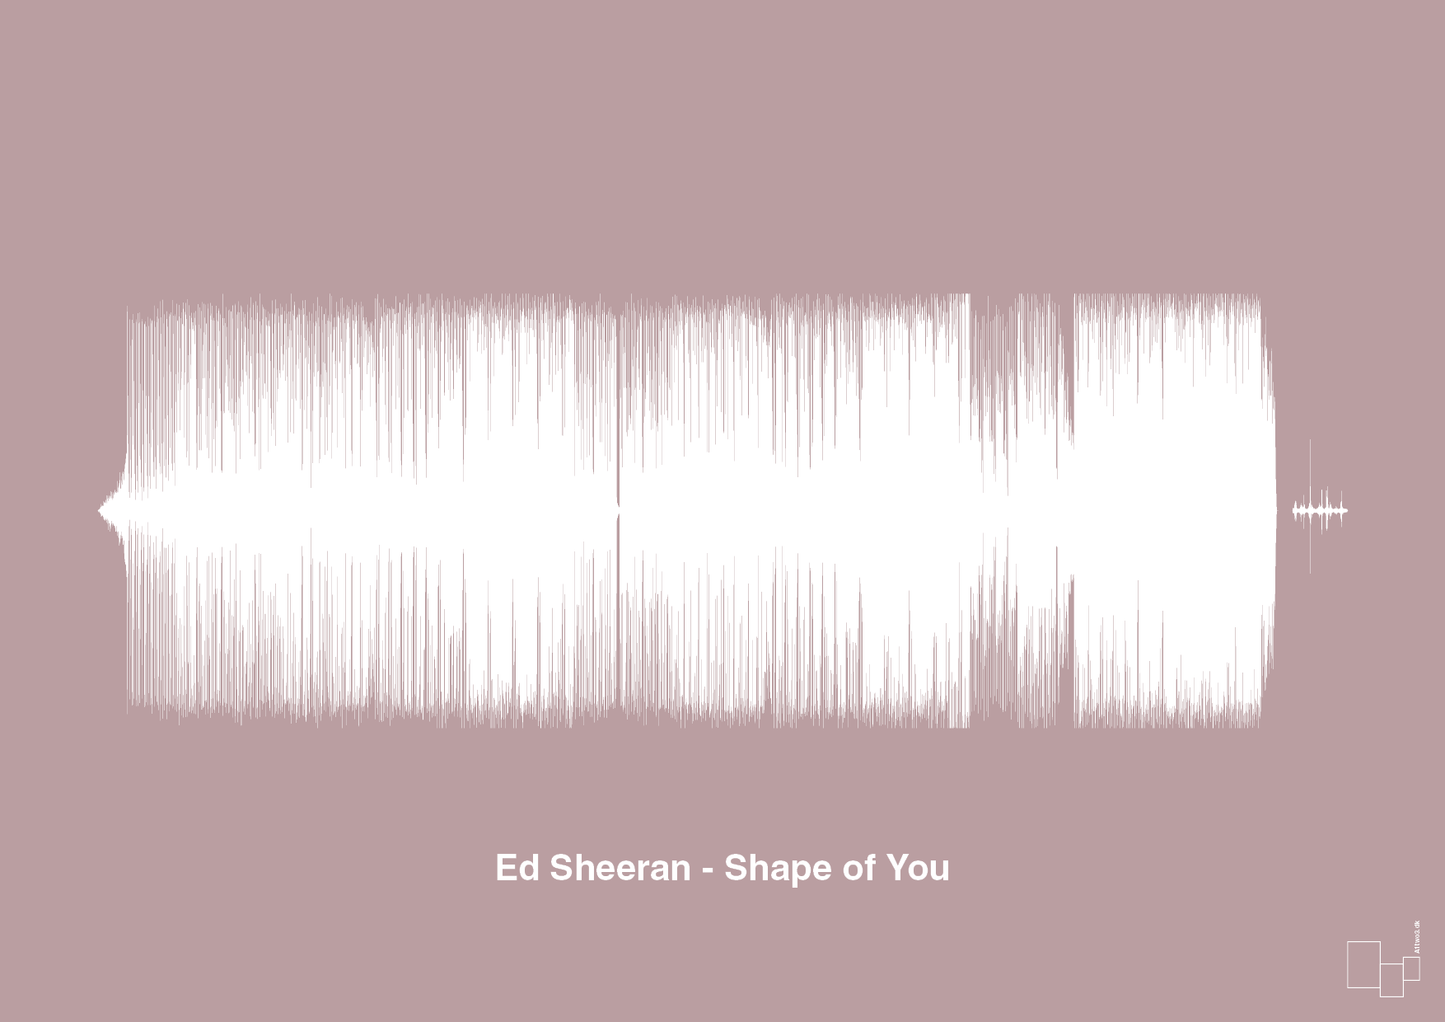 ed sheeran - shape of you - Plakat med Musik i Light Rose